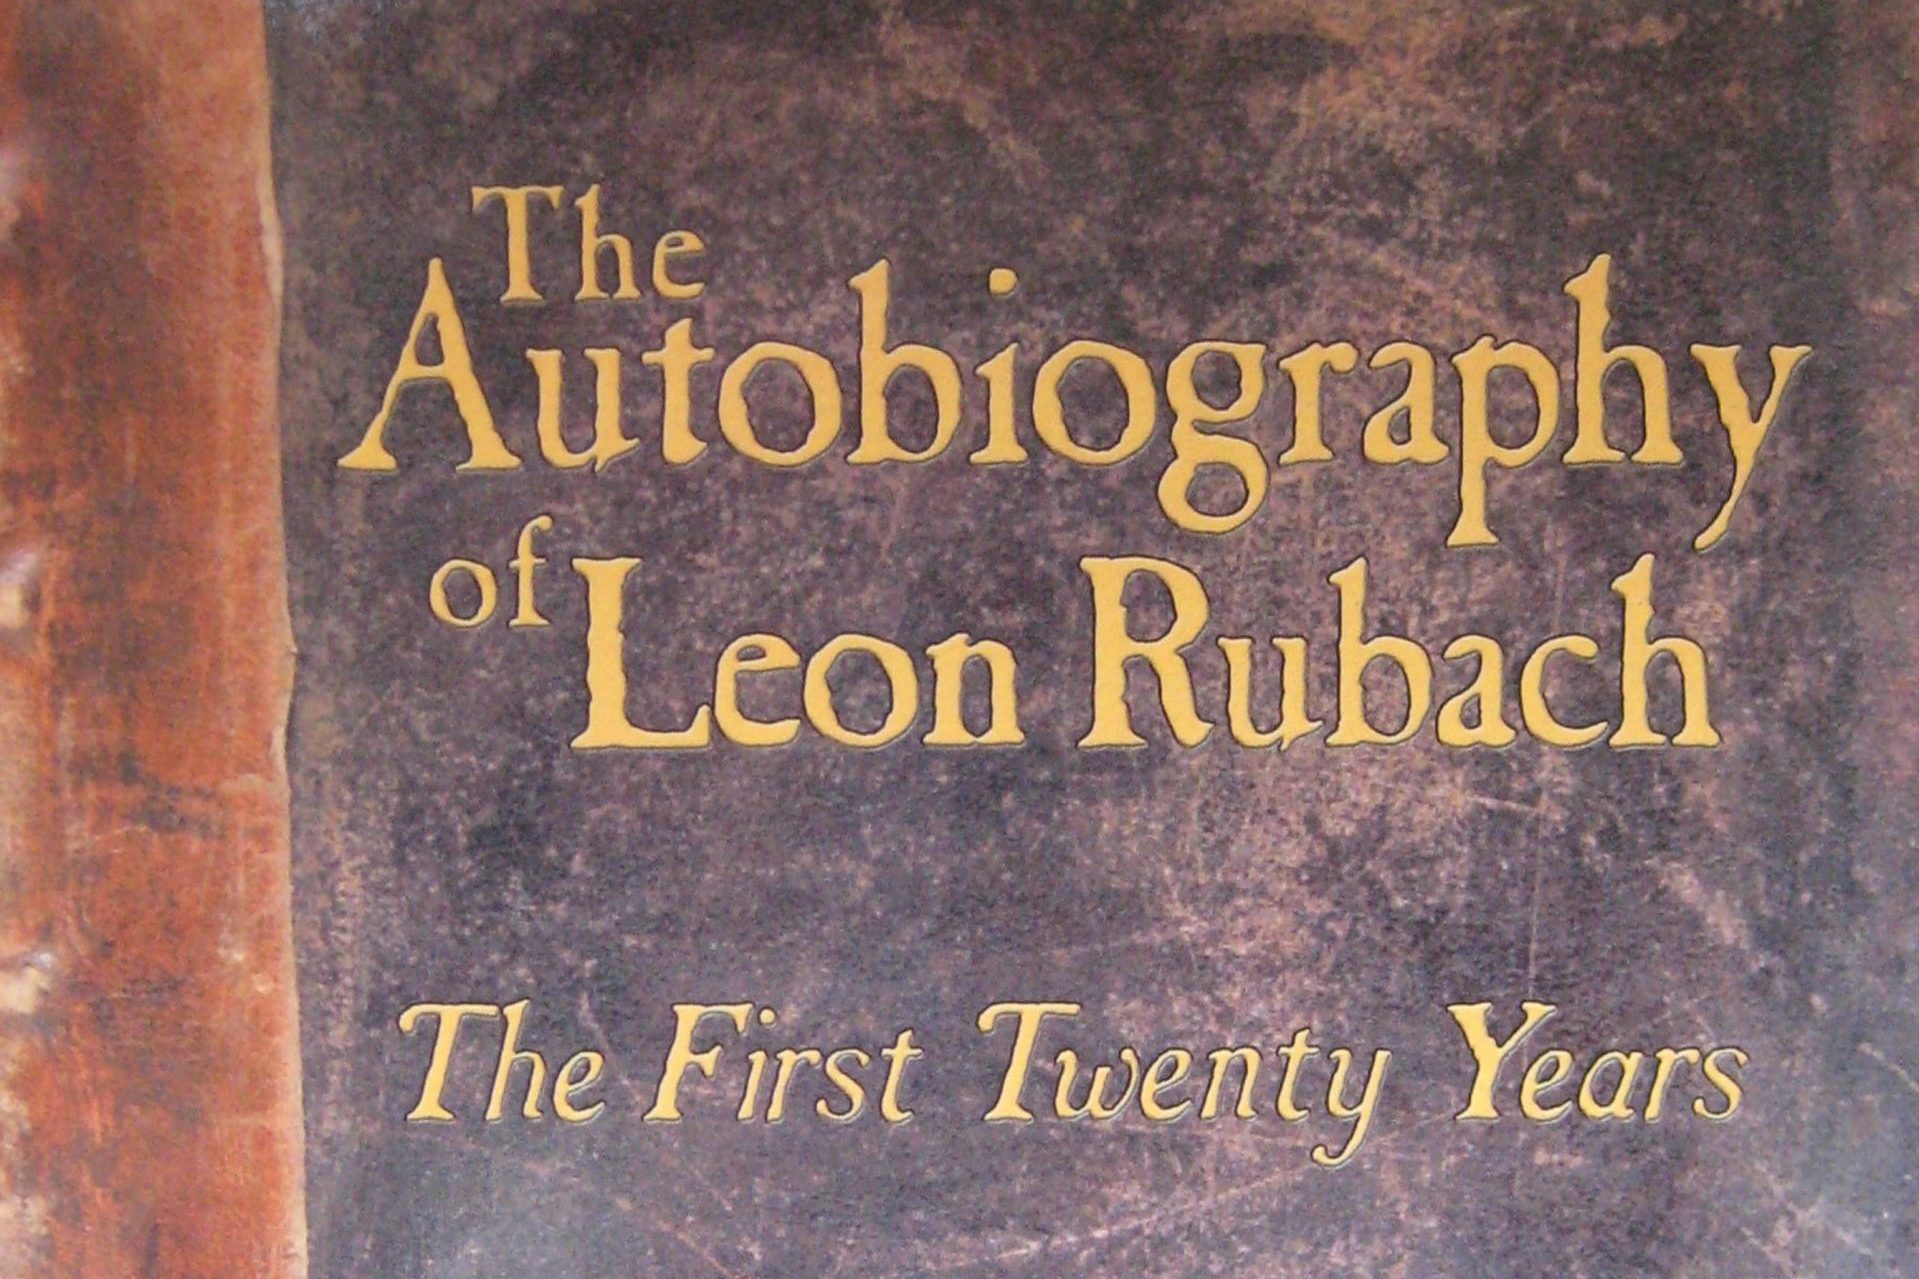 Okładka opublikowanych wspomnień z dedykacją Leona (Uli) Rubacha ocalonego przez Zofię Tomaszewską. Leon Rubach, „The Autobiography of Leon Rubach. The First Twenty Years”, New Jersey 2009